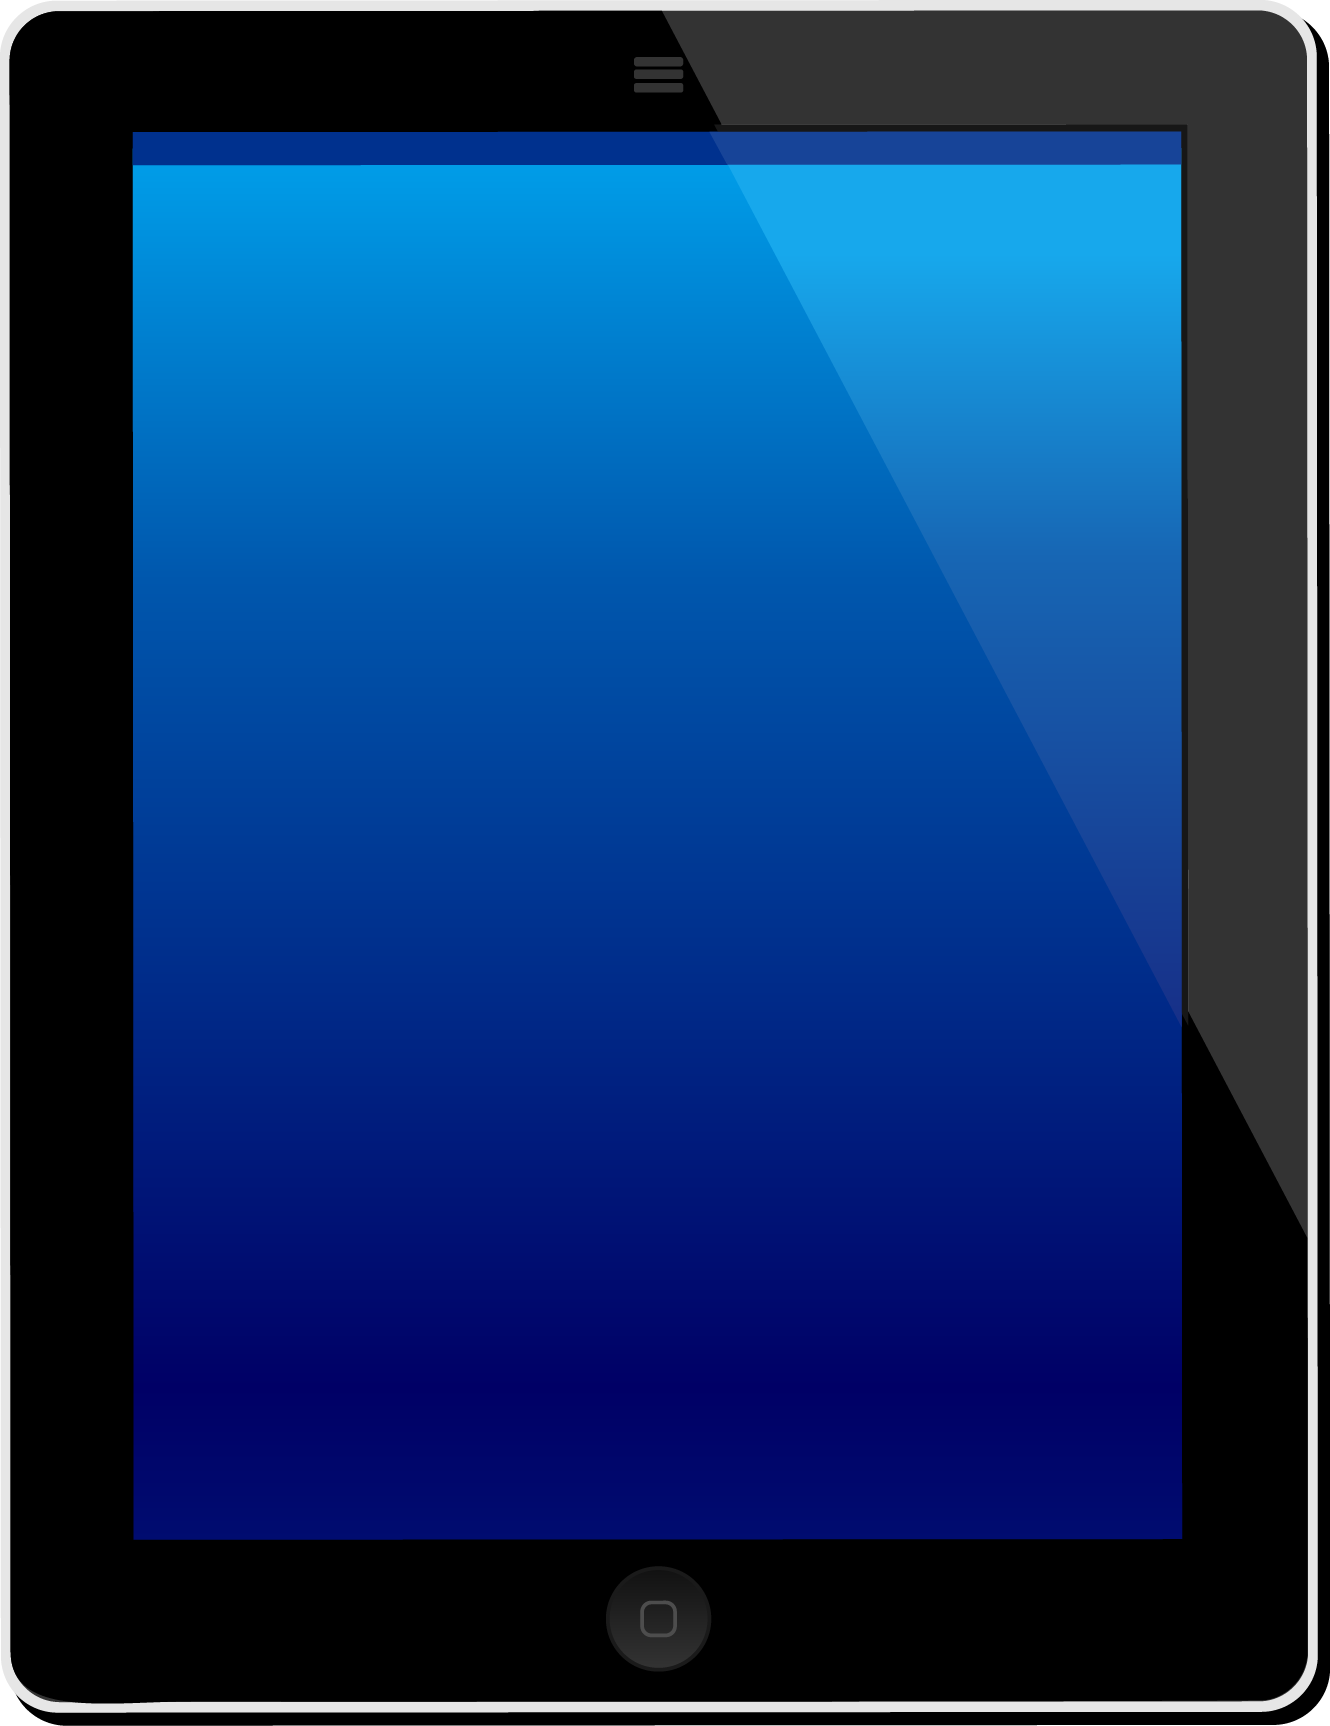 تصویر دوربری تبلت با صفحه نمایش آبی برای نوشتن متن